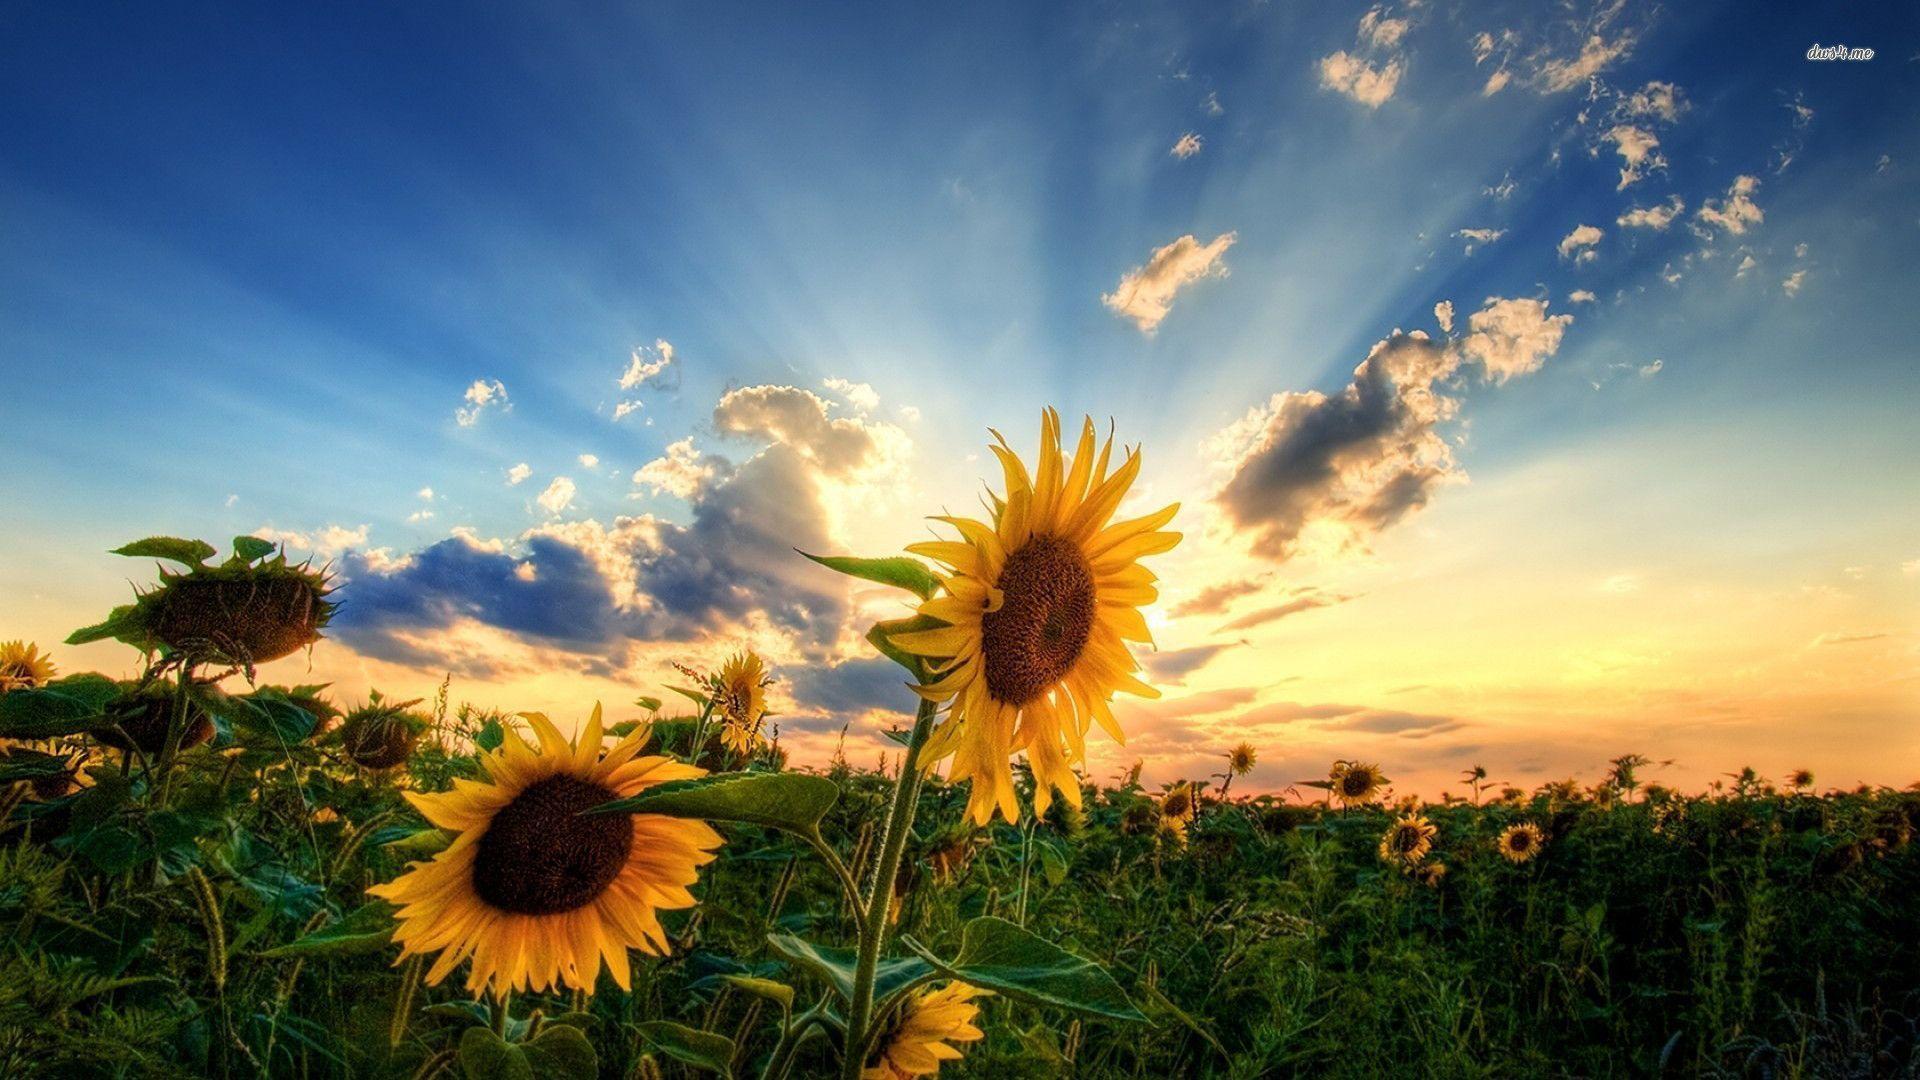 Sunflowers Wallpapers với độ phân giải cao, sắc nét và sống động sẽ tạo cho bạn một màn hình đẹp và tươi sáng. Hãy giữ cho tâm trí bạn sảng khoái và tràn đầy năng lượng với bức hình nền này.